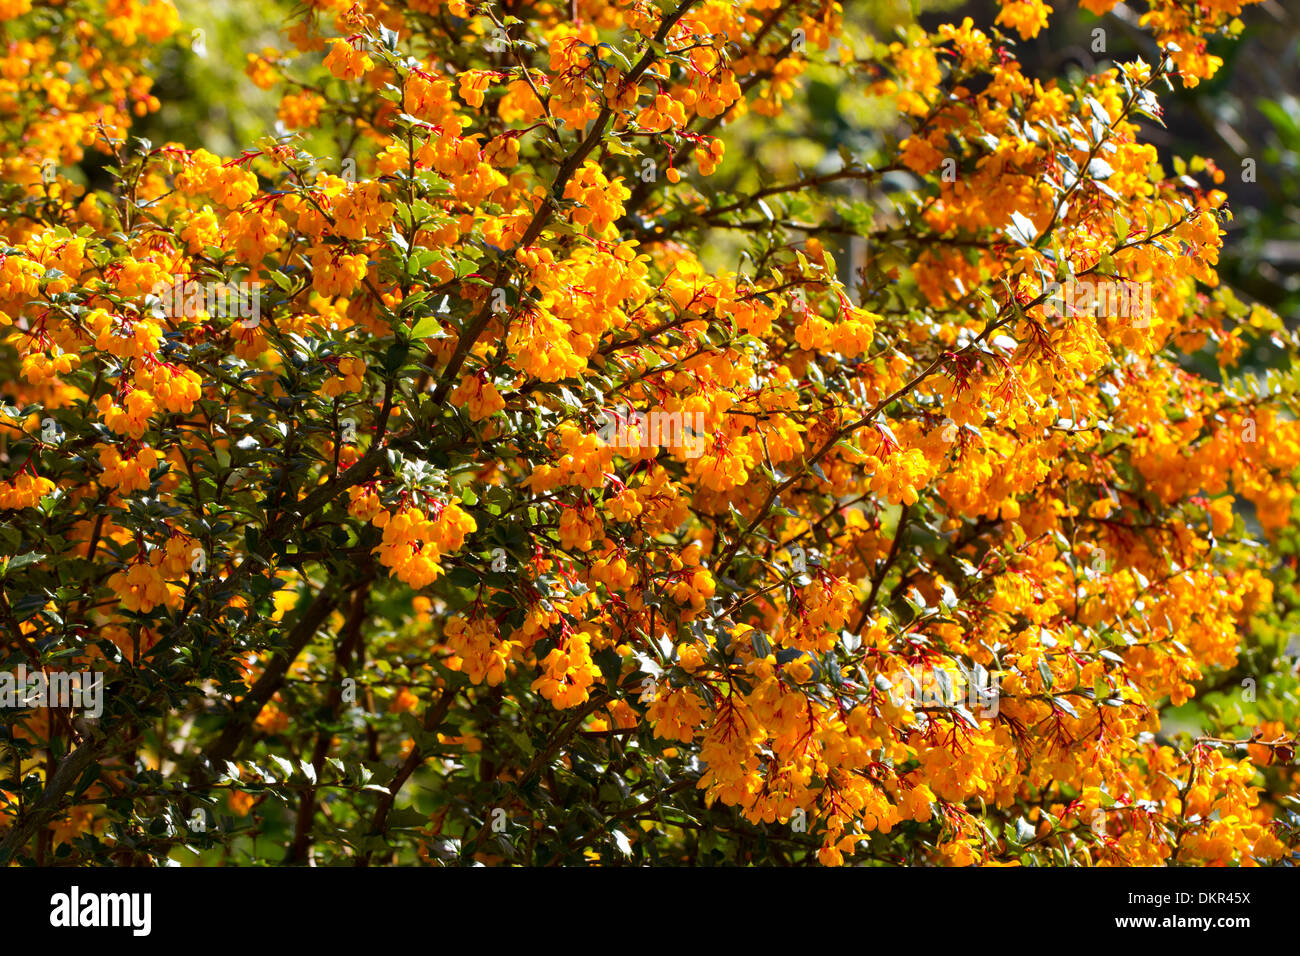 Berberis darwinii floraison dans un jardin. Powys, Pays de Galles. Peut Banque D'Images